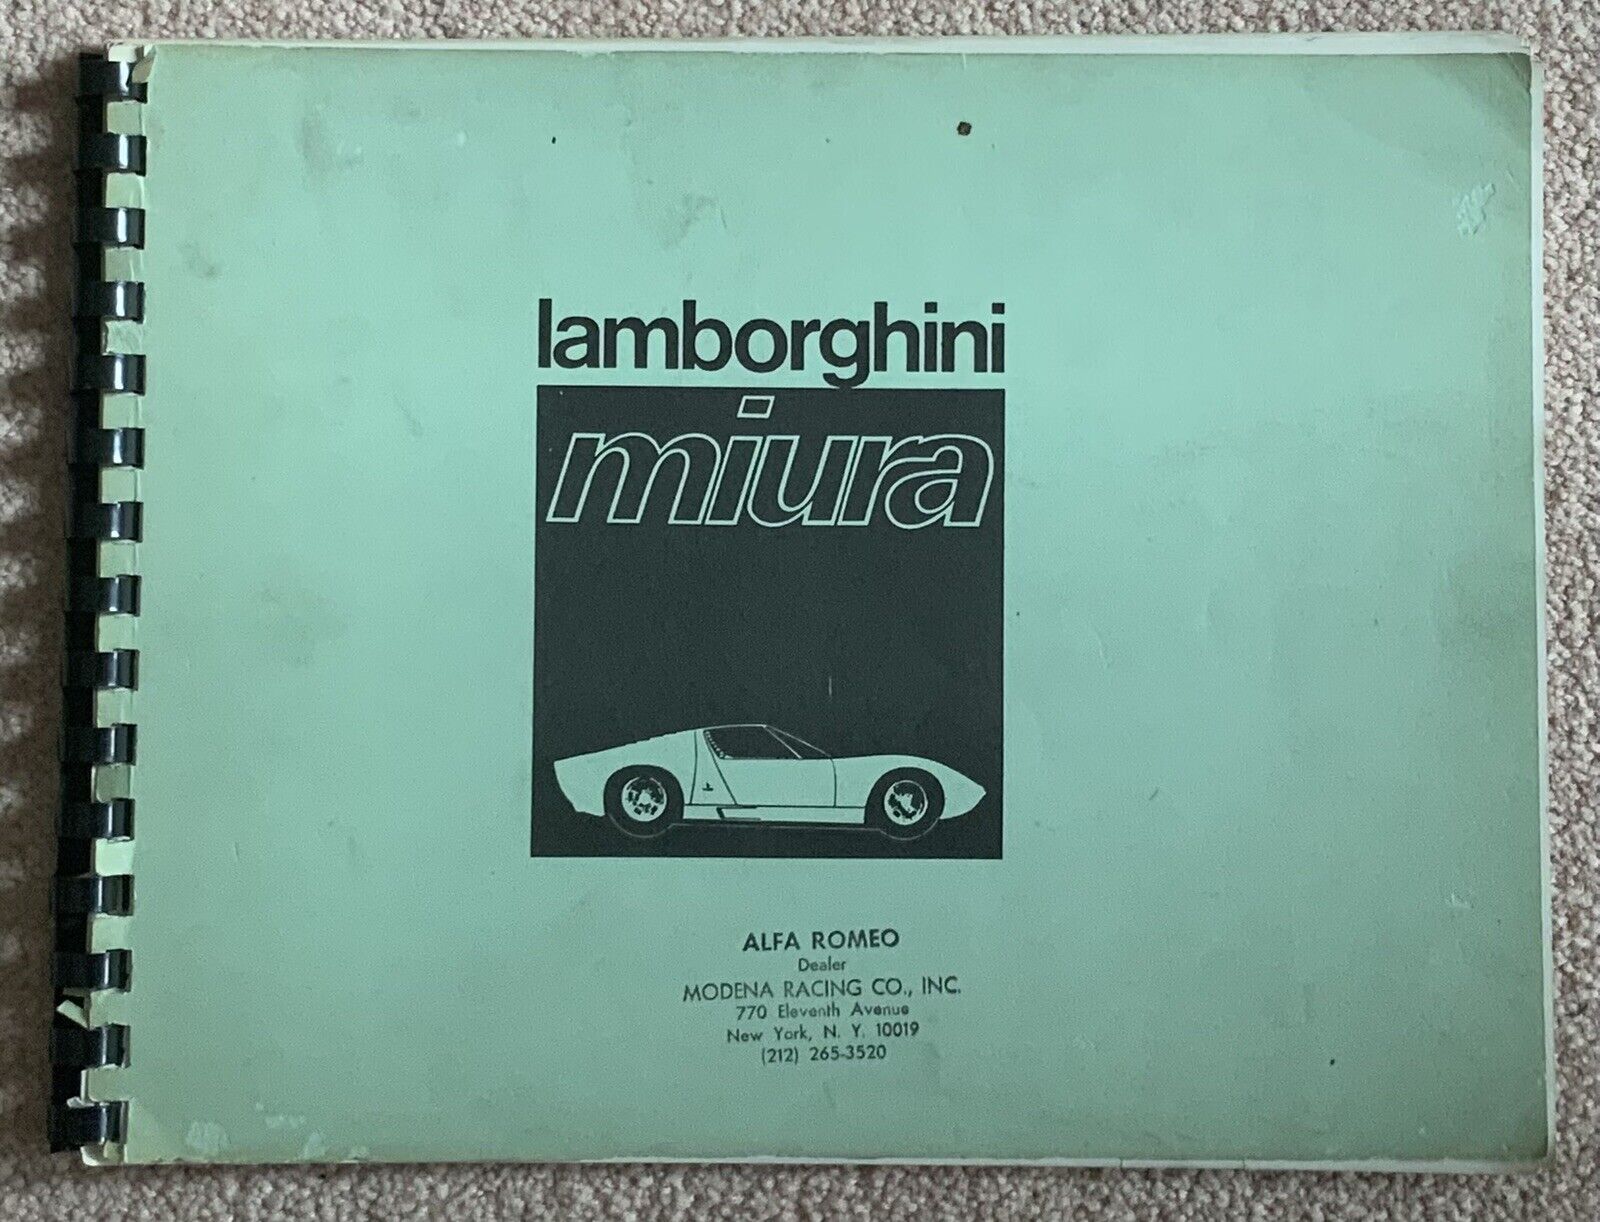 Lamborghini Miura Use and Maintenance manual; Original